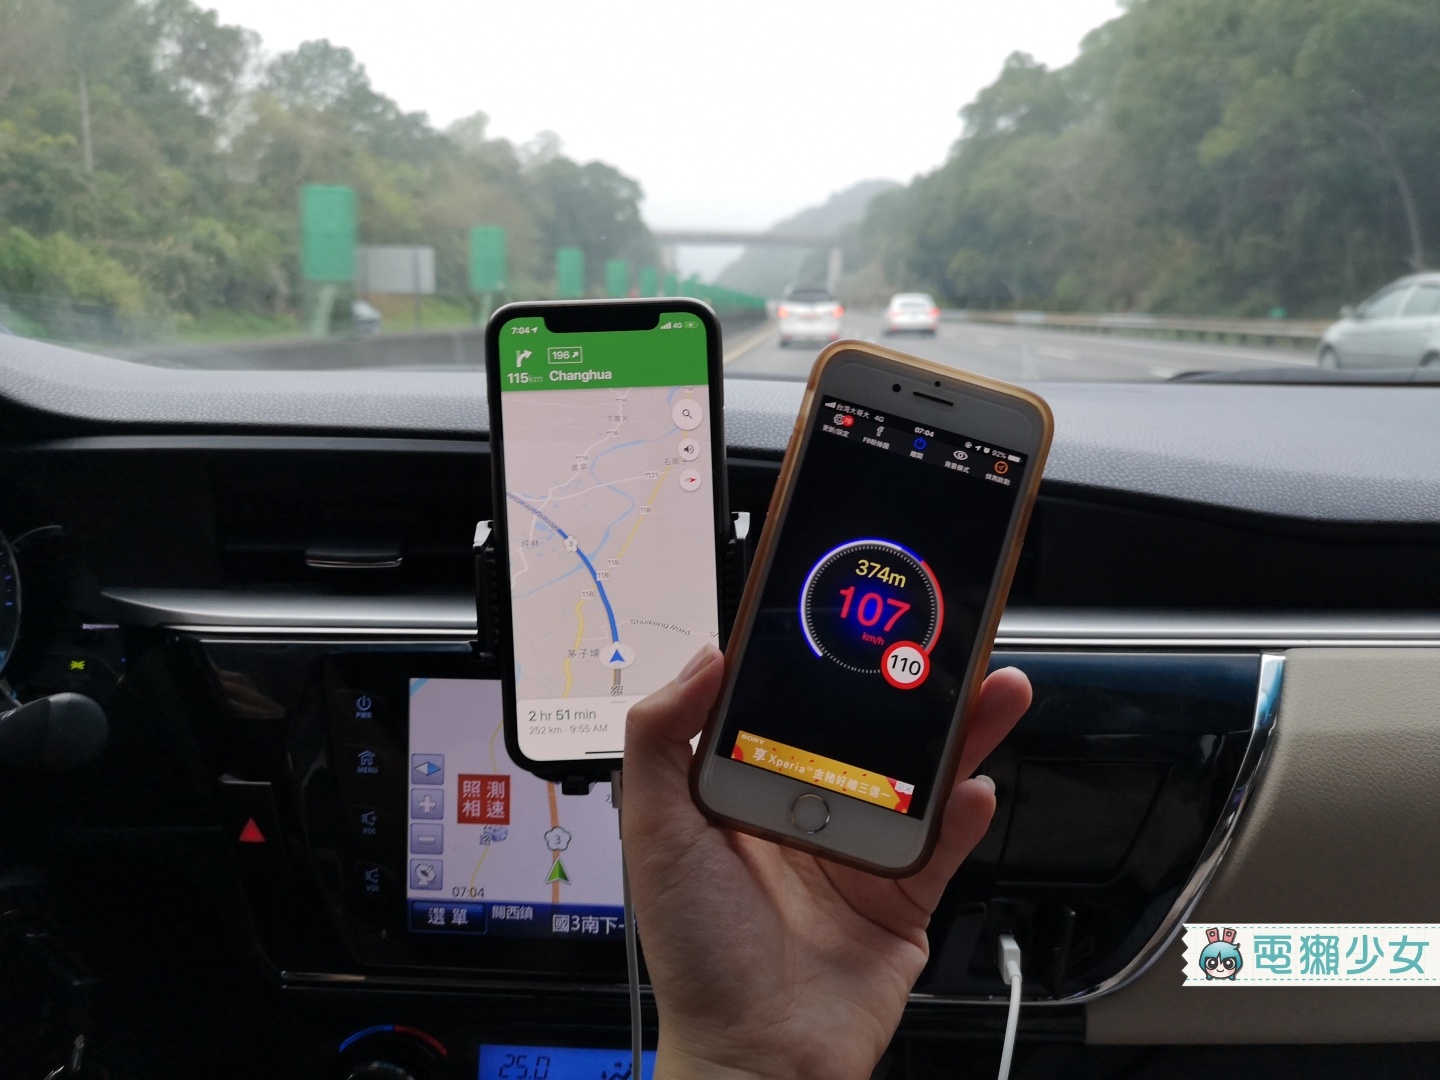 開車出遊不怕車速被罰『 神盾測速照相 』通知你哪邊有測速照相機 Android / iOS